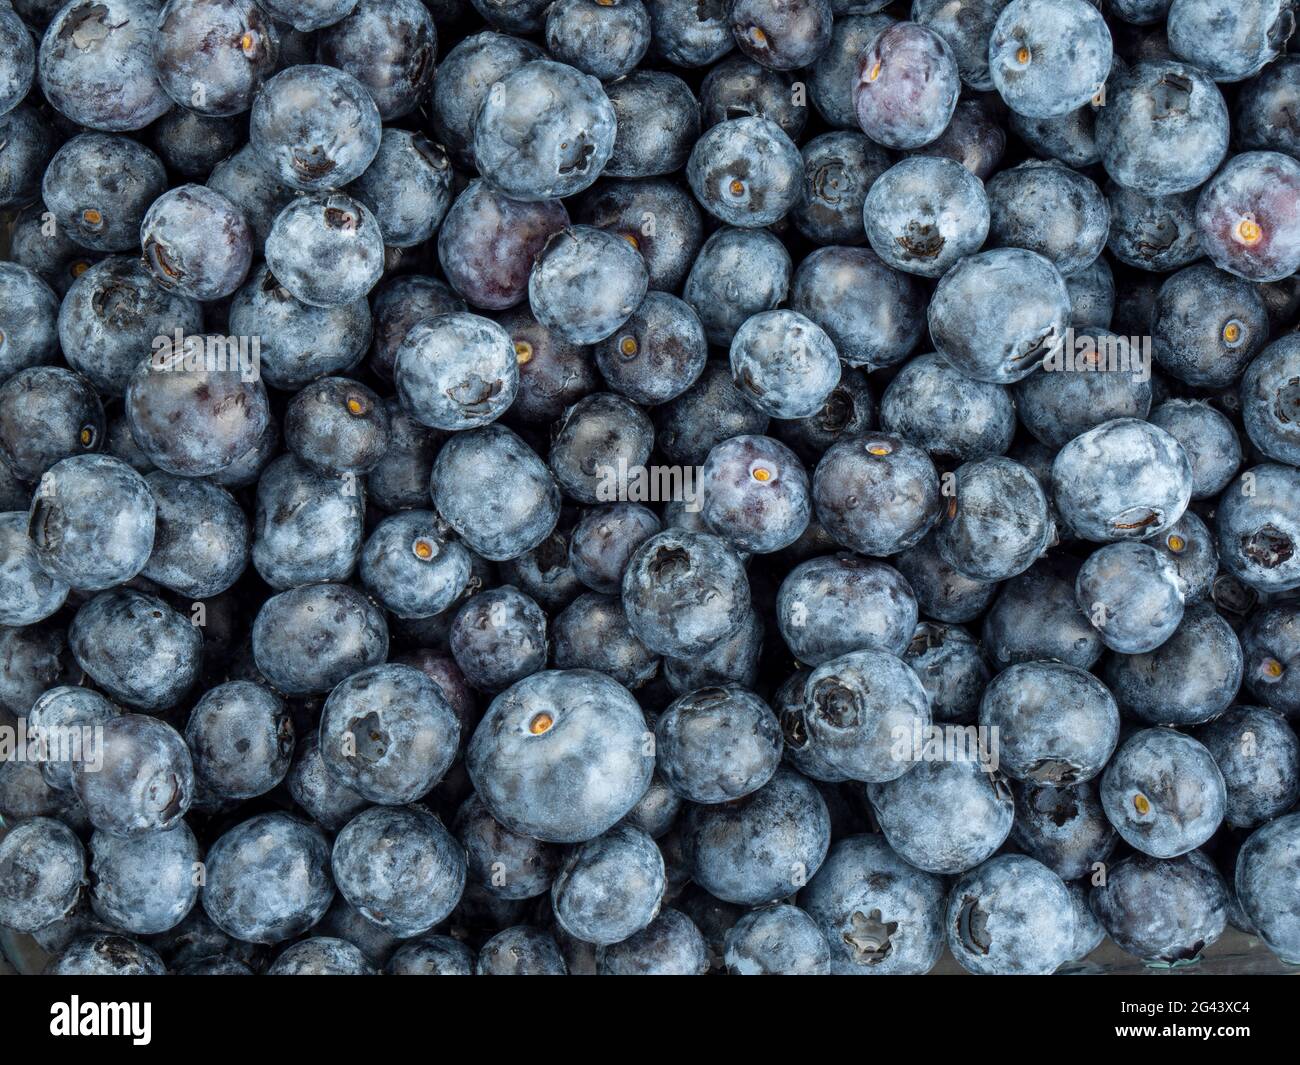 Full frame of blueberries Stock Photo